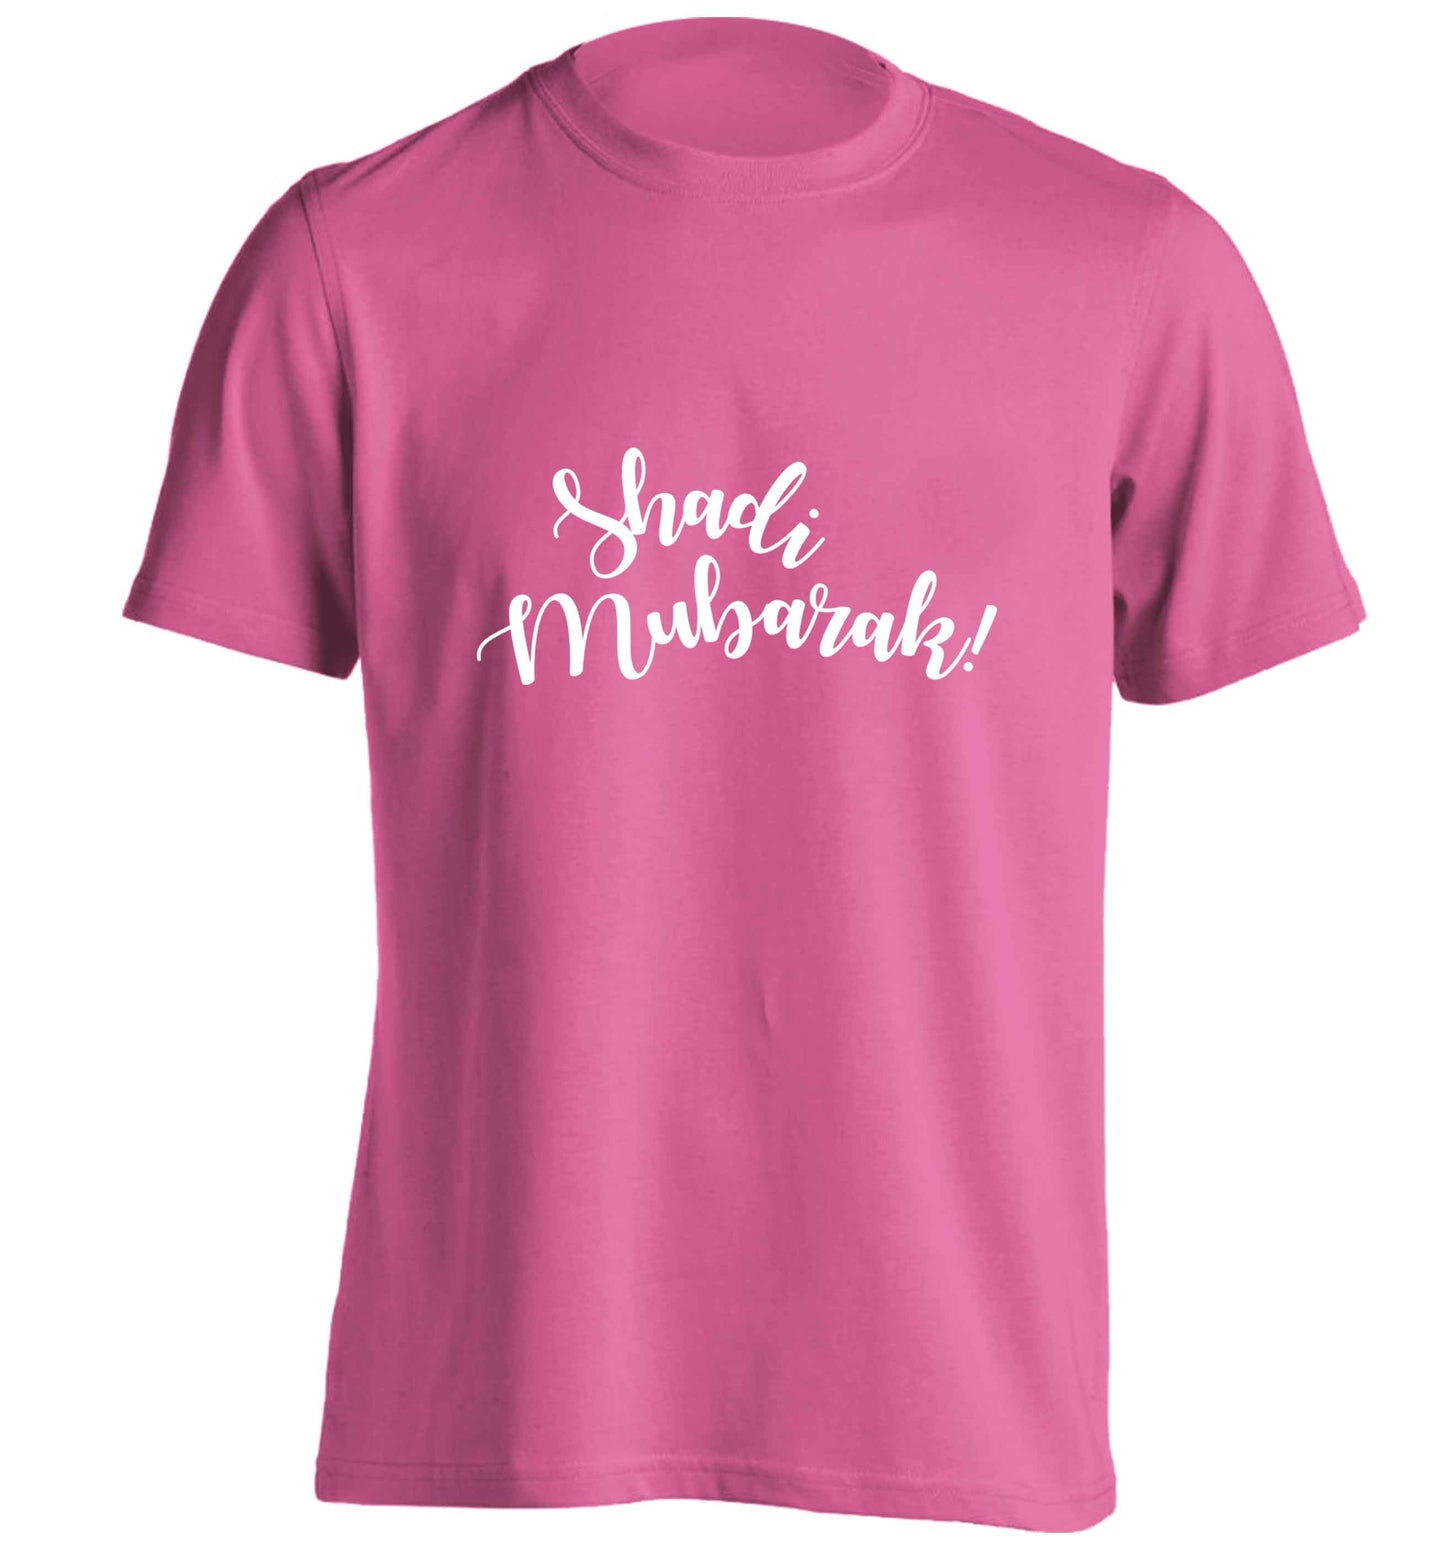 Shadi mubarak adults unisex pink Tshirt 2XL